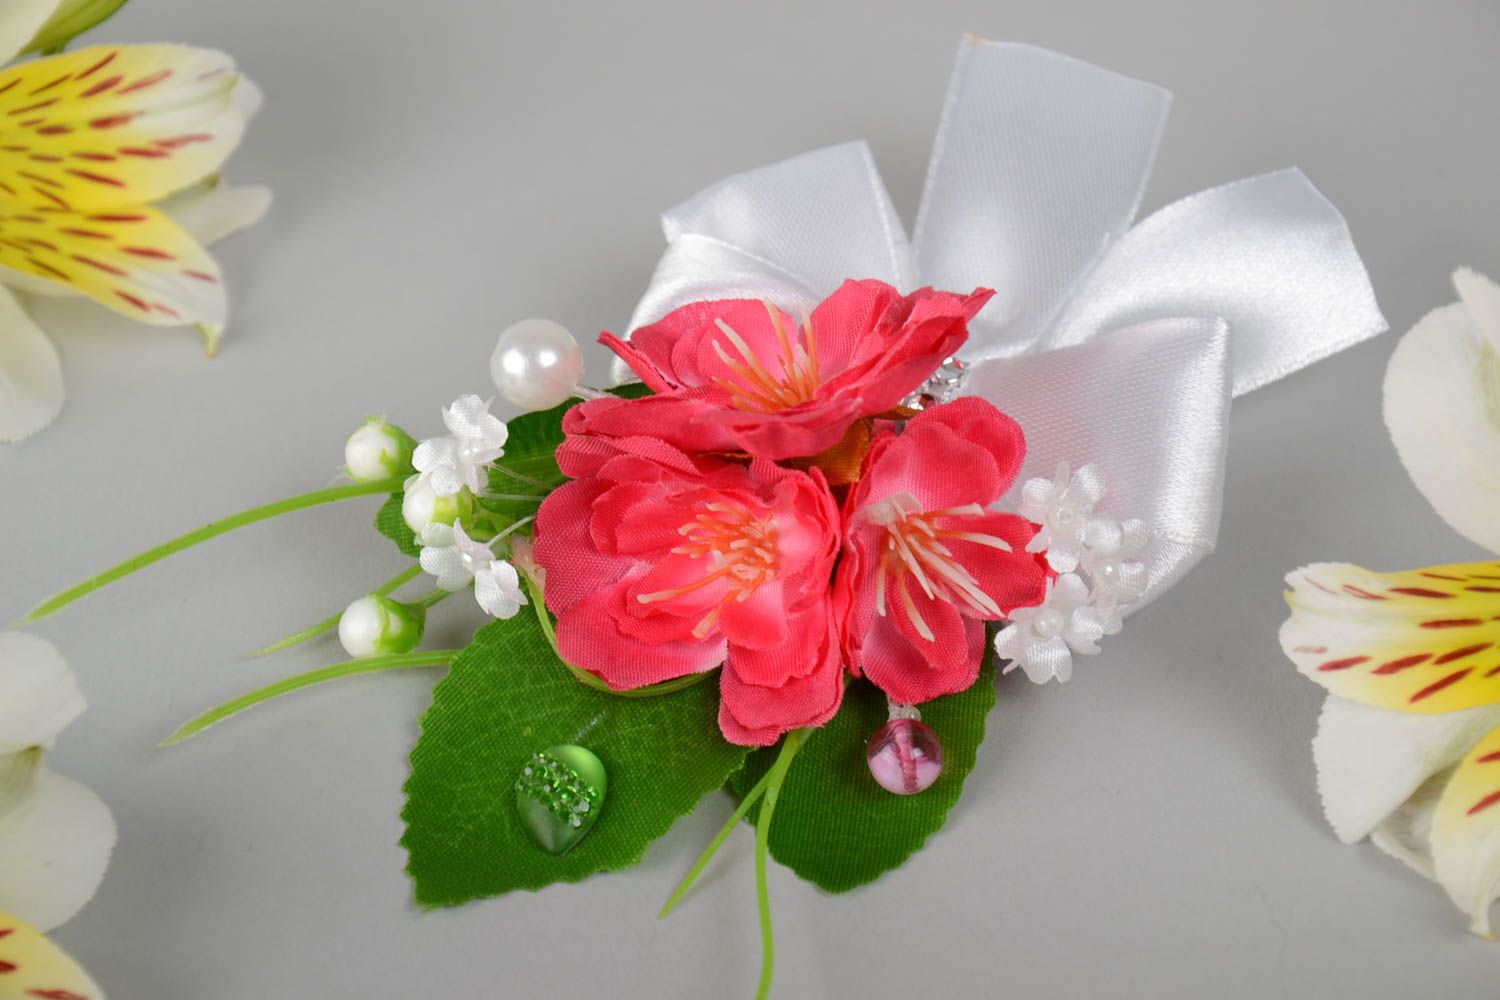 Бутоньерка для гостей свидетелей или молодоженов с цветком красивая хэнд мейд фото 1